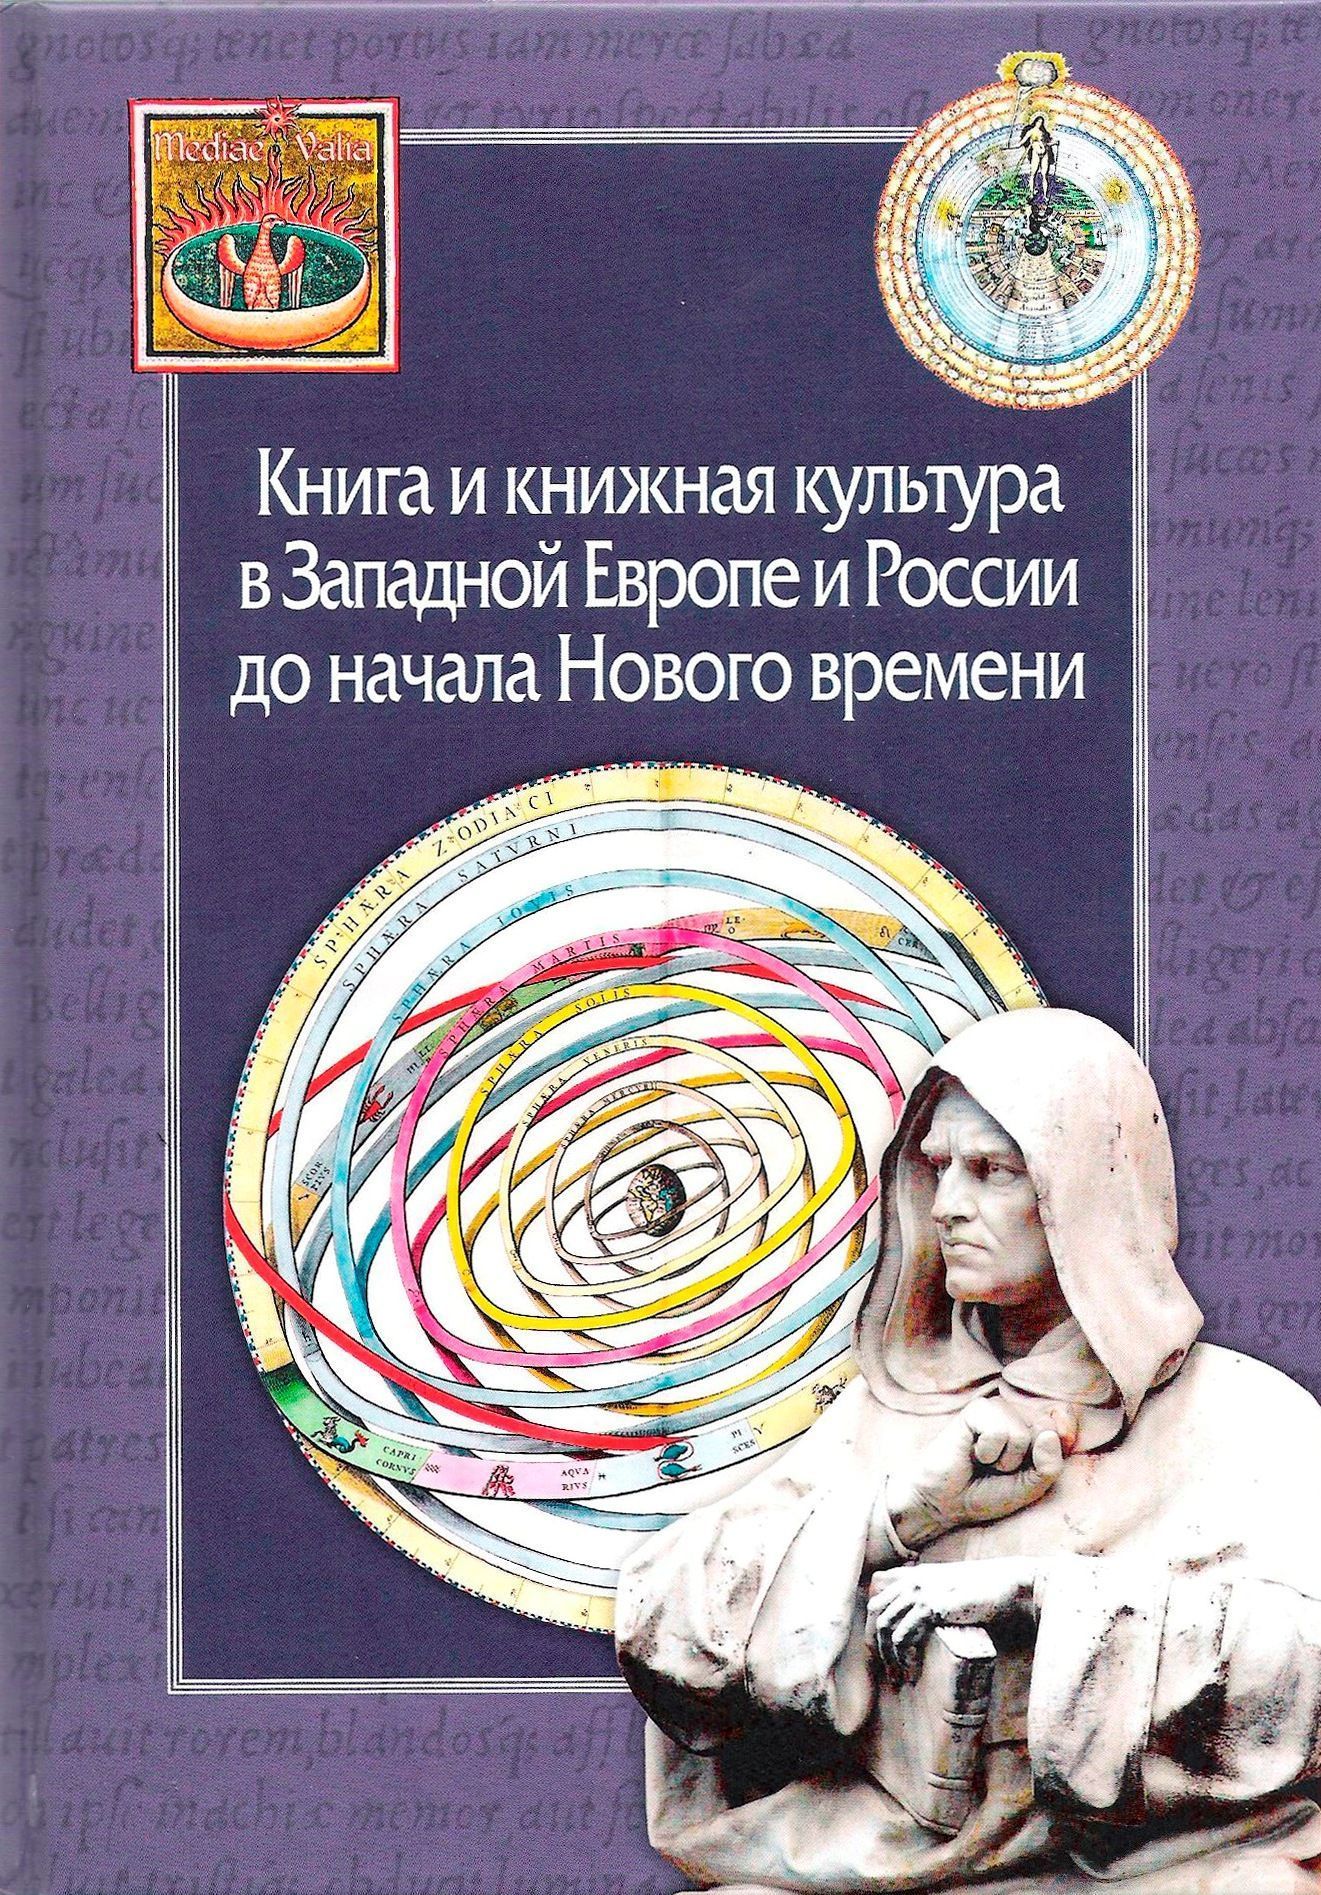  - Книга и книжная культура в Западной Европе и России до начала Нового времени